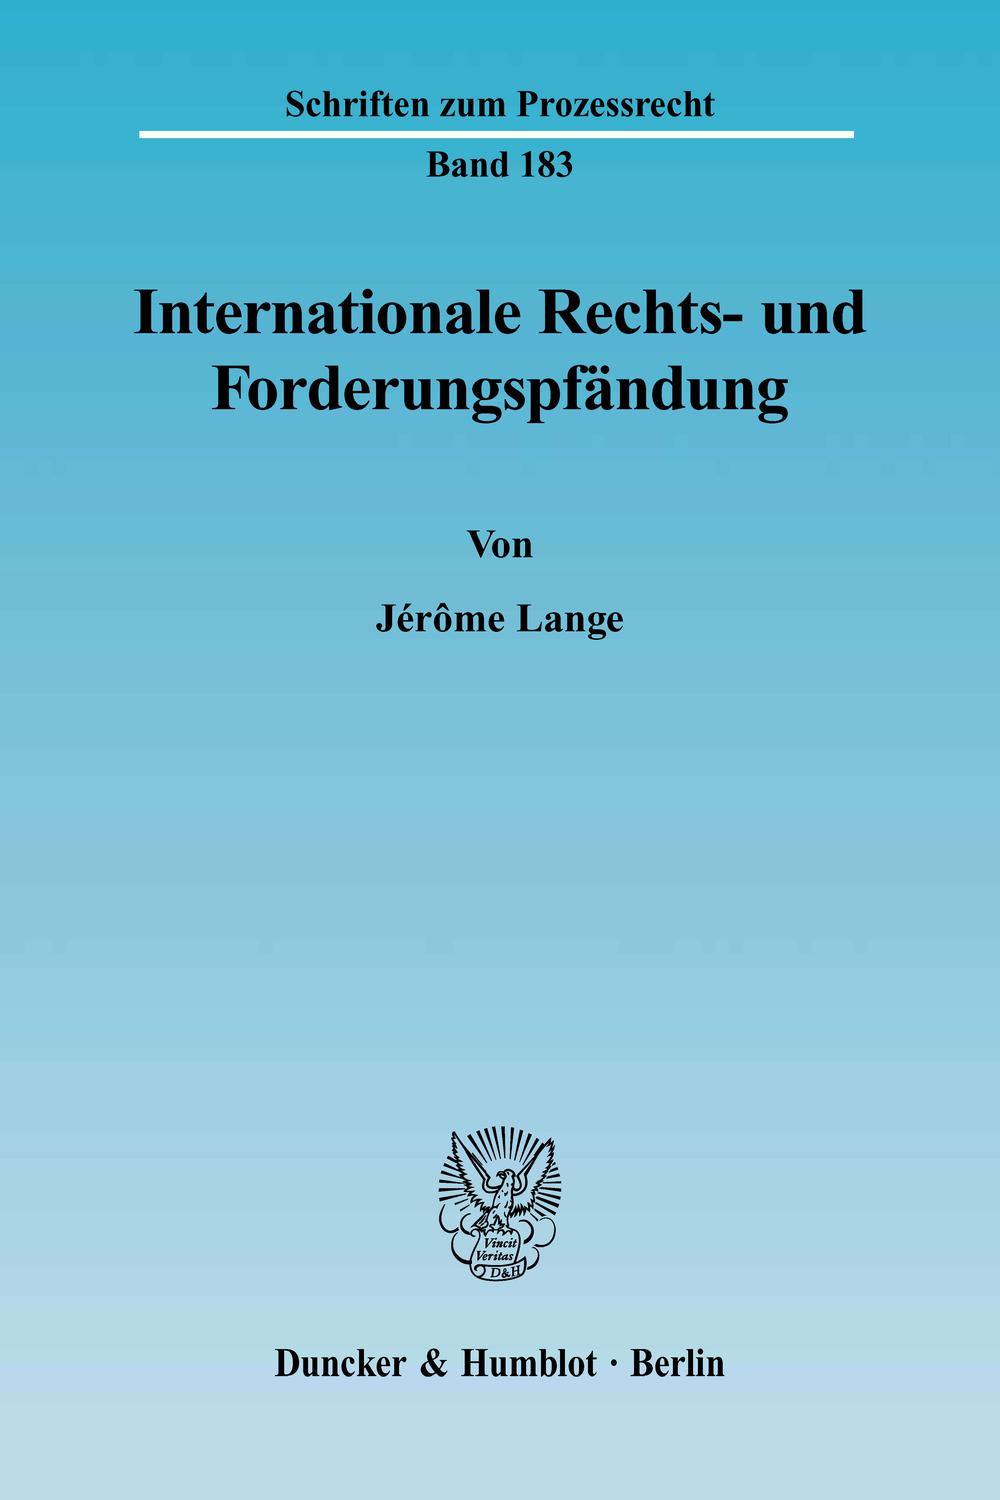 Internationale Rechts- und Forderungspfändung. - Jérôme Lange